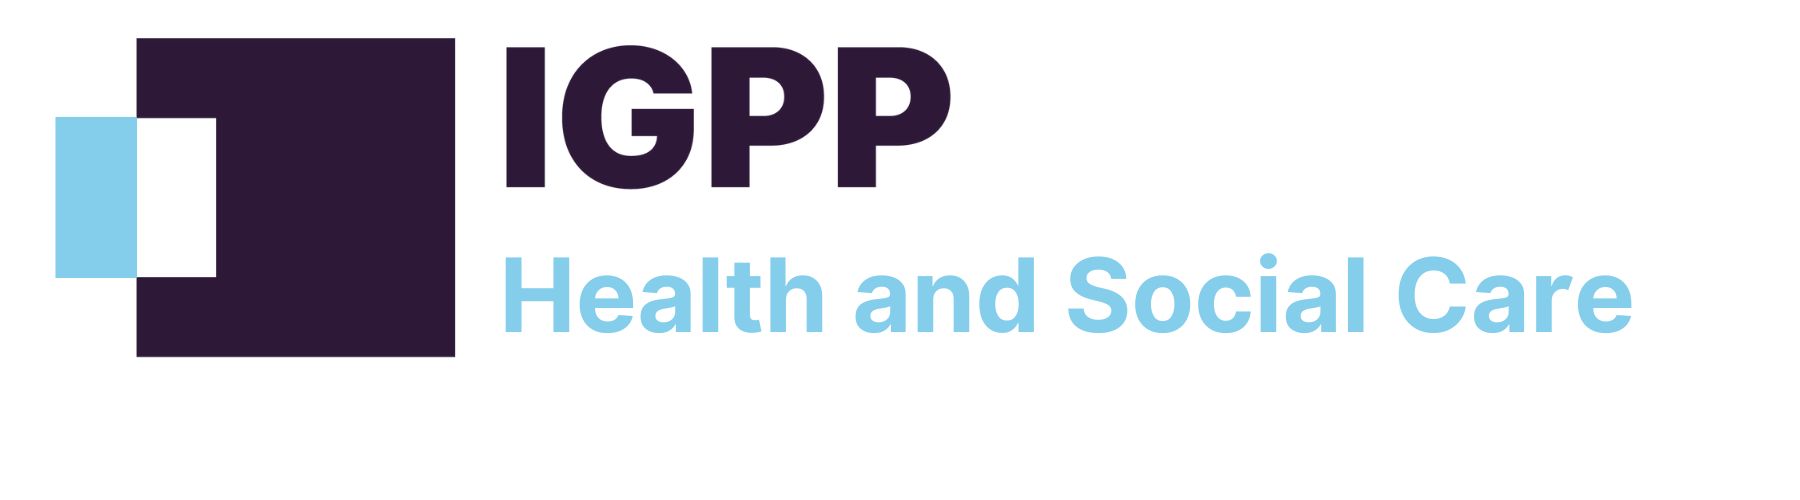 IGPP Health and Social Care sub brand logo